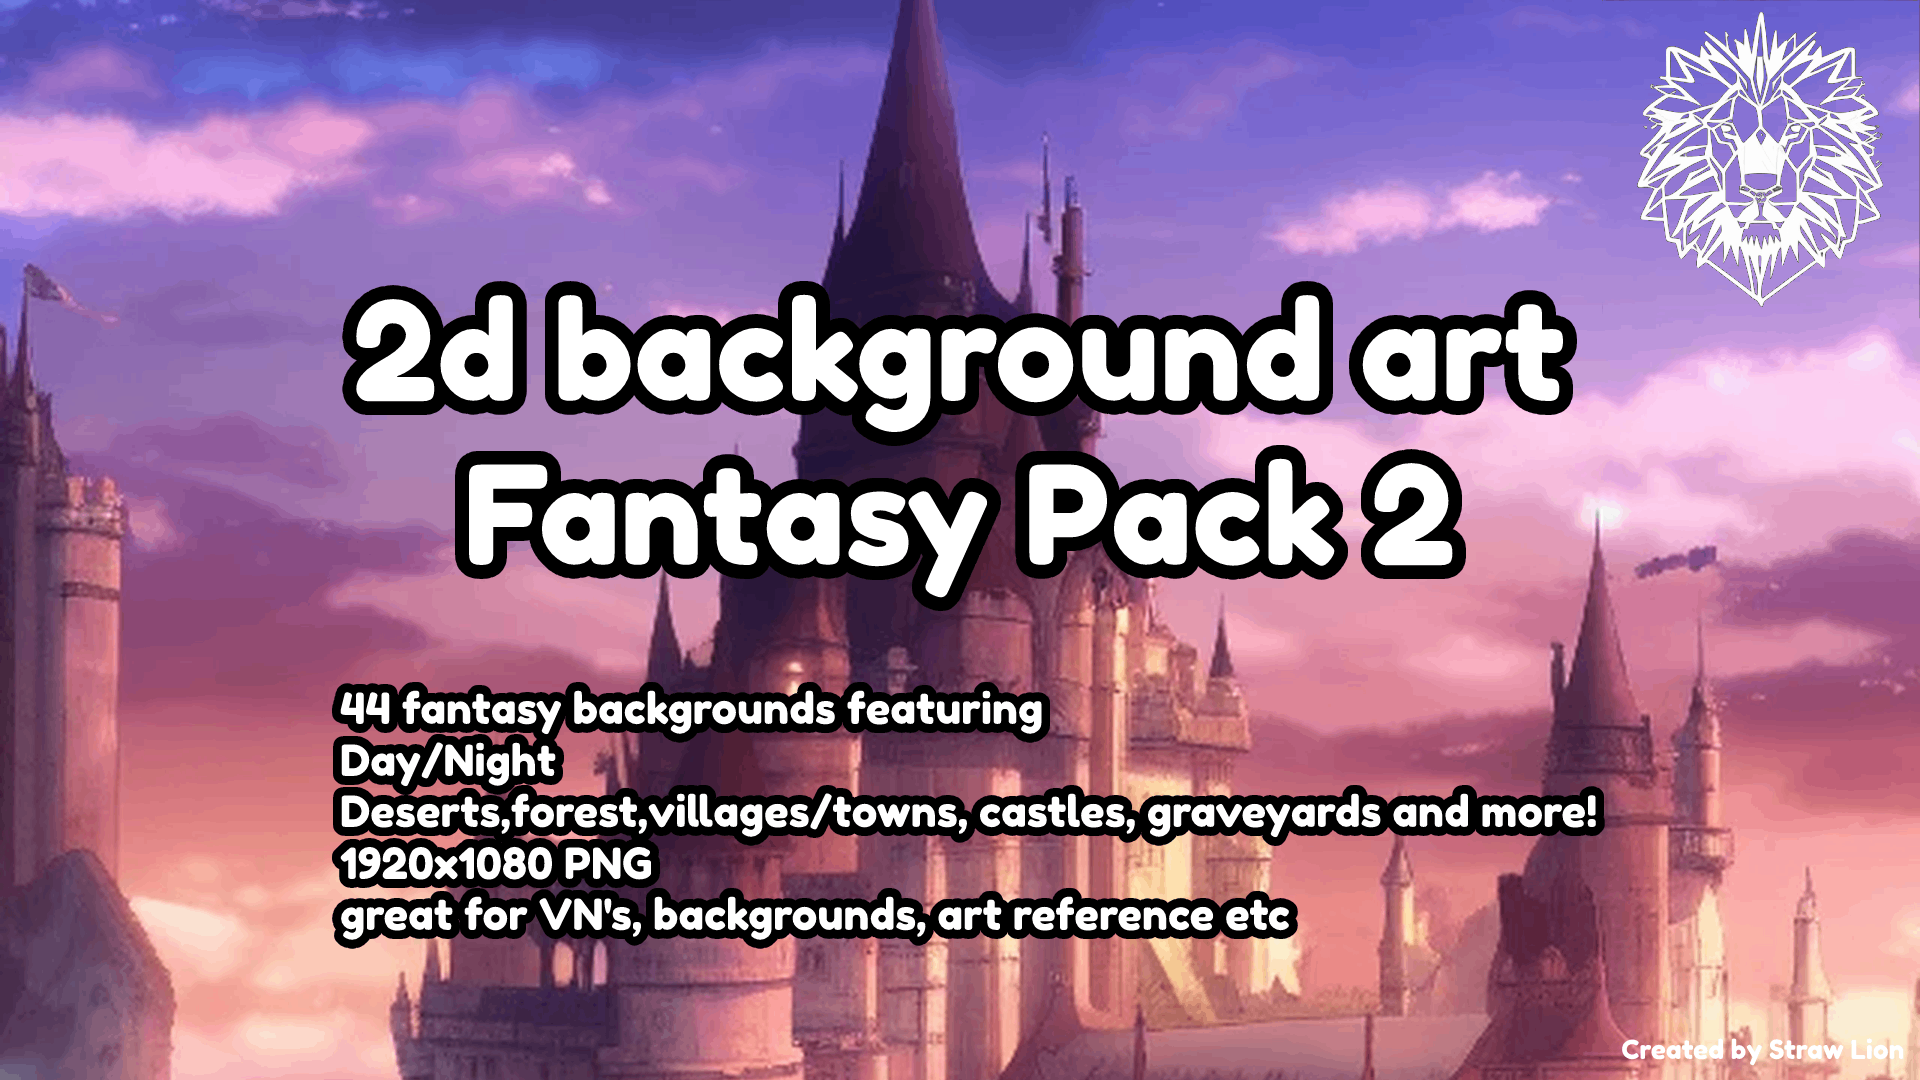 Fantasy Pack 2 Backgrounds 2d Art Pack